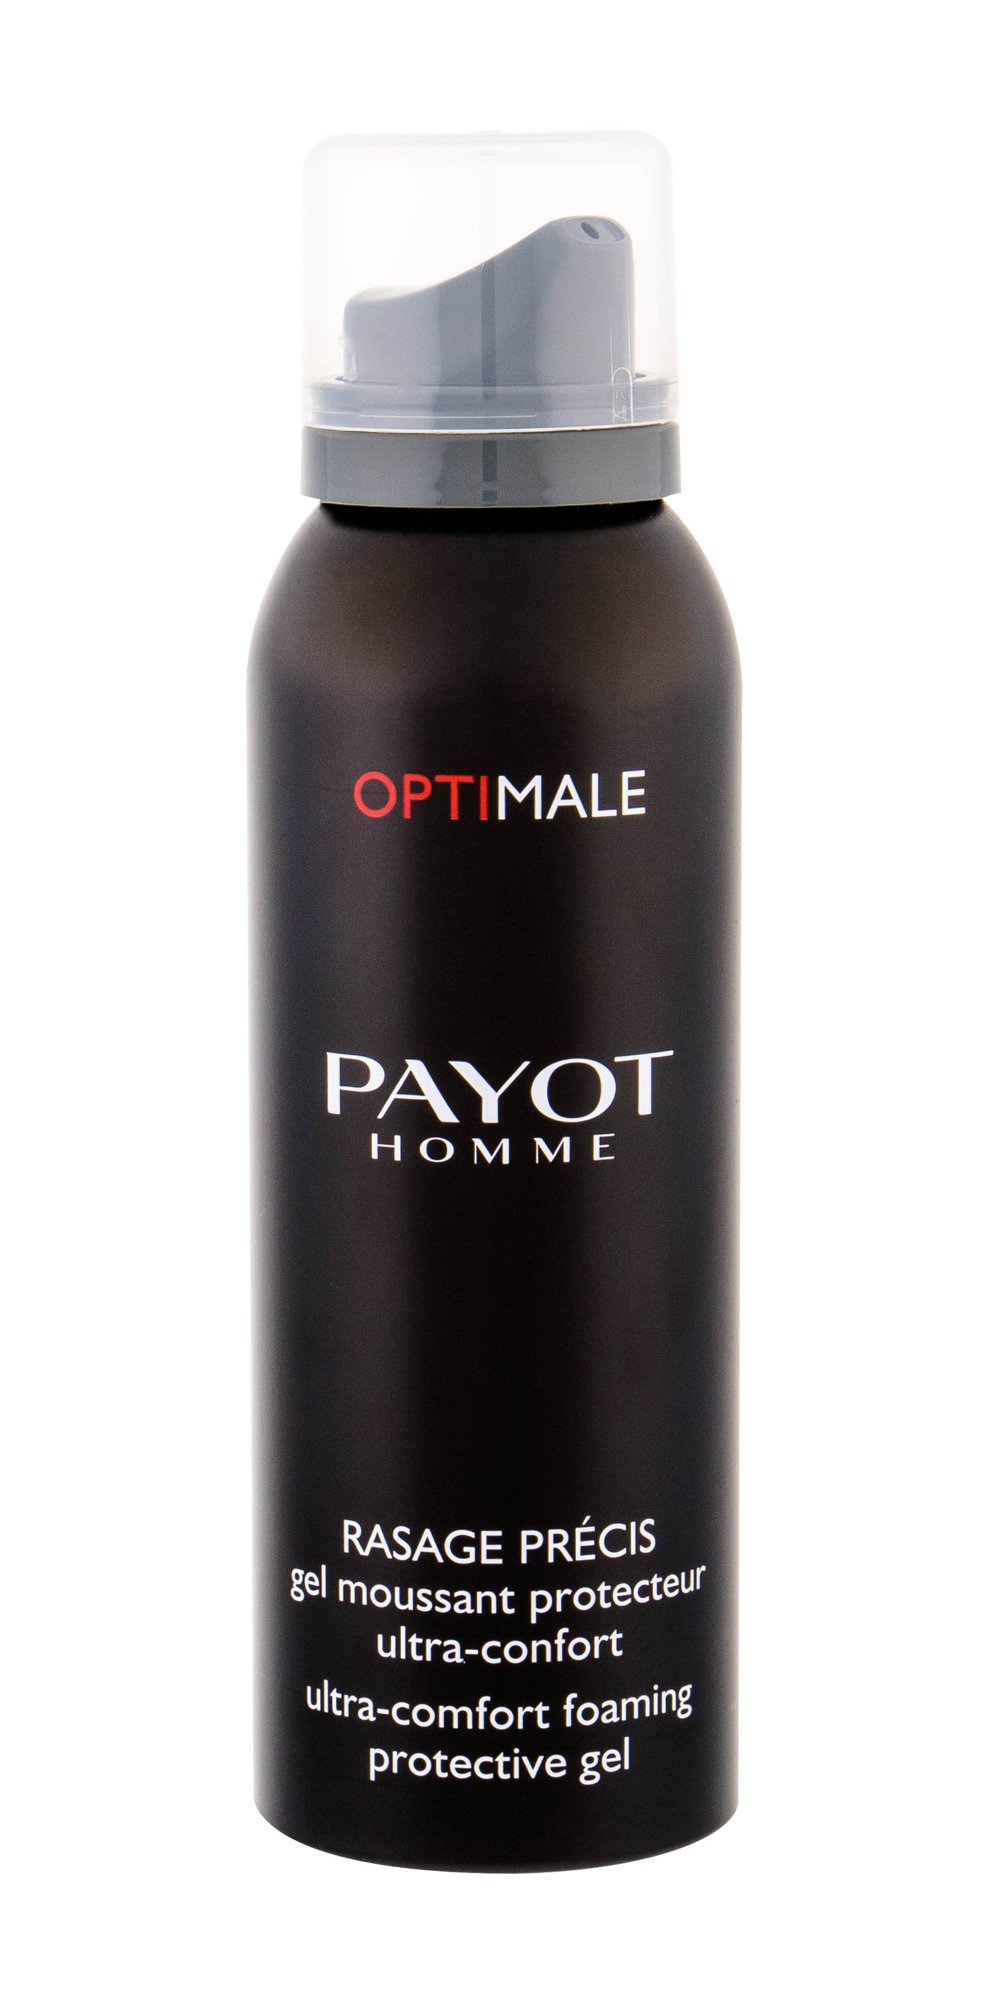 Payot Homme Optimale Ultra-Comfort Foaming Gel skutimosi gelis